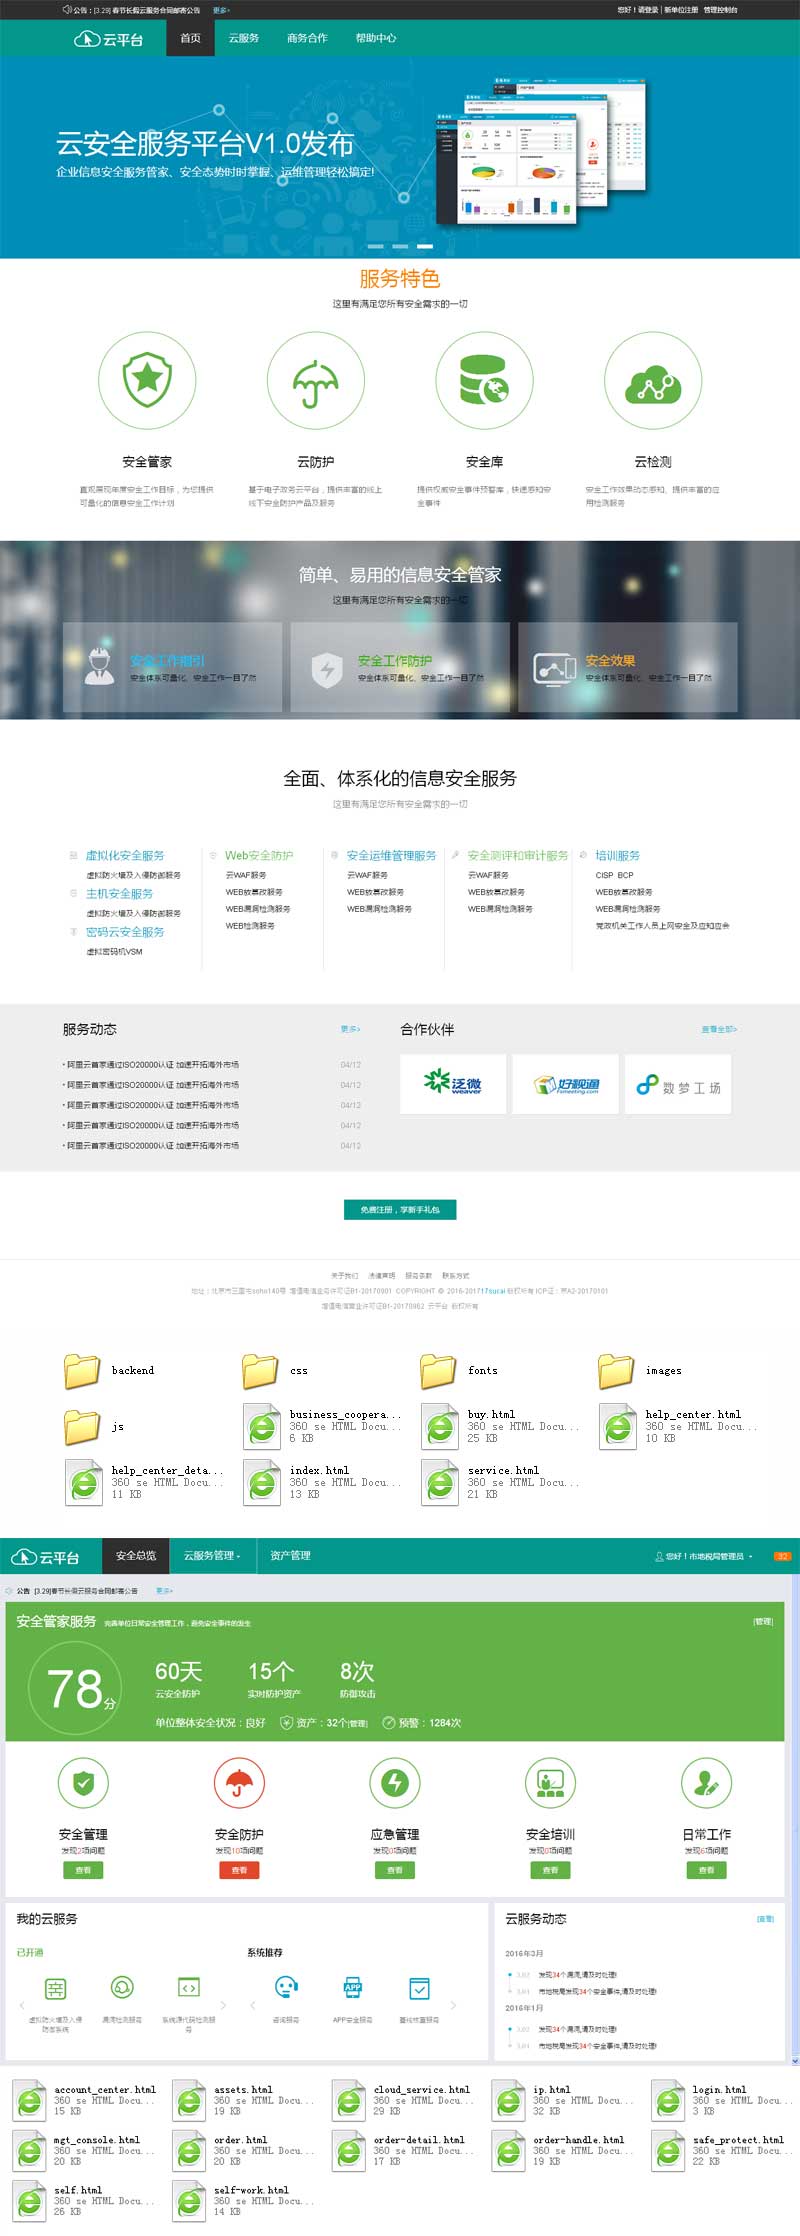 宽屏的云平台服务器管理企业网站模板html全套